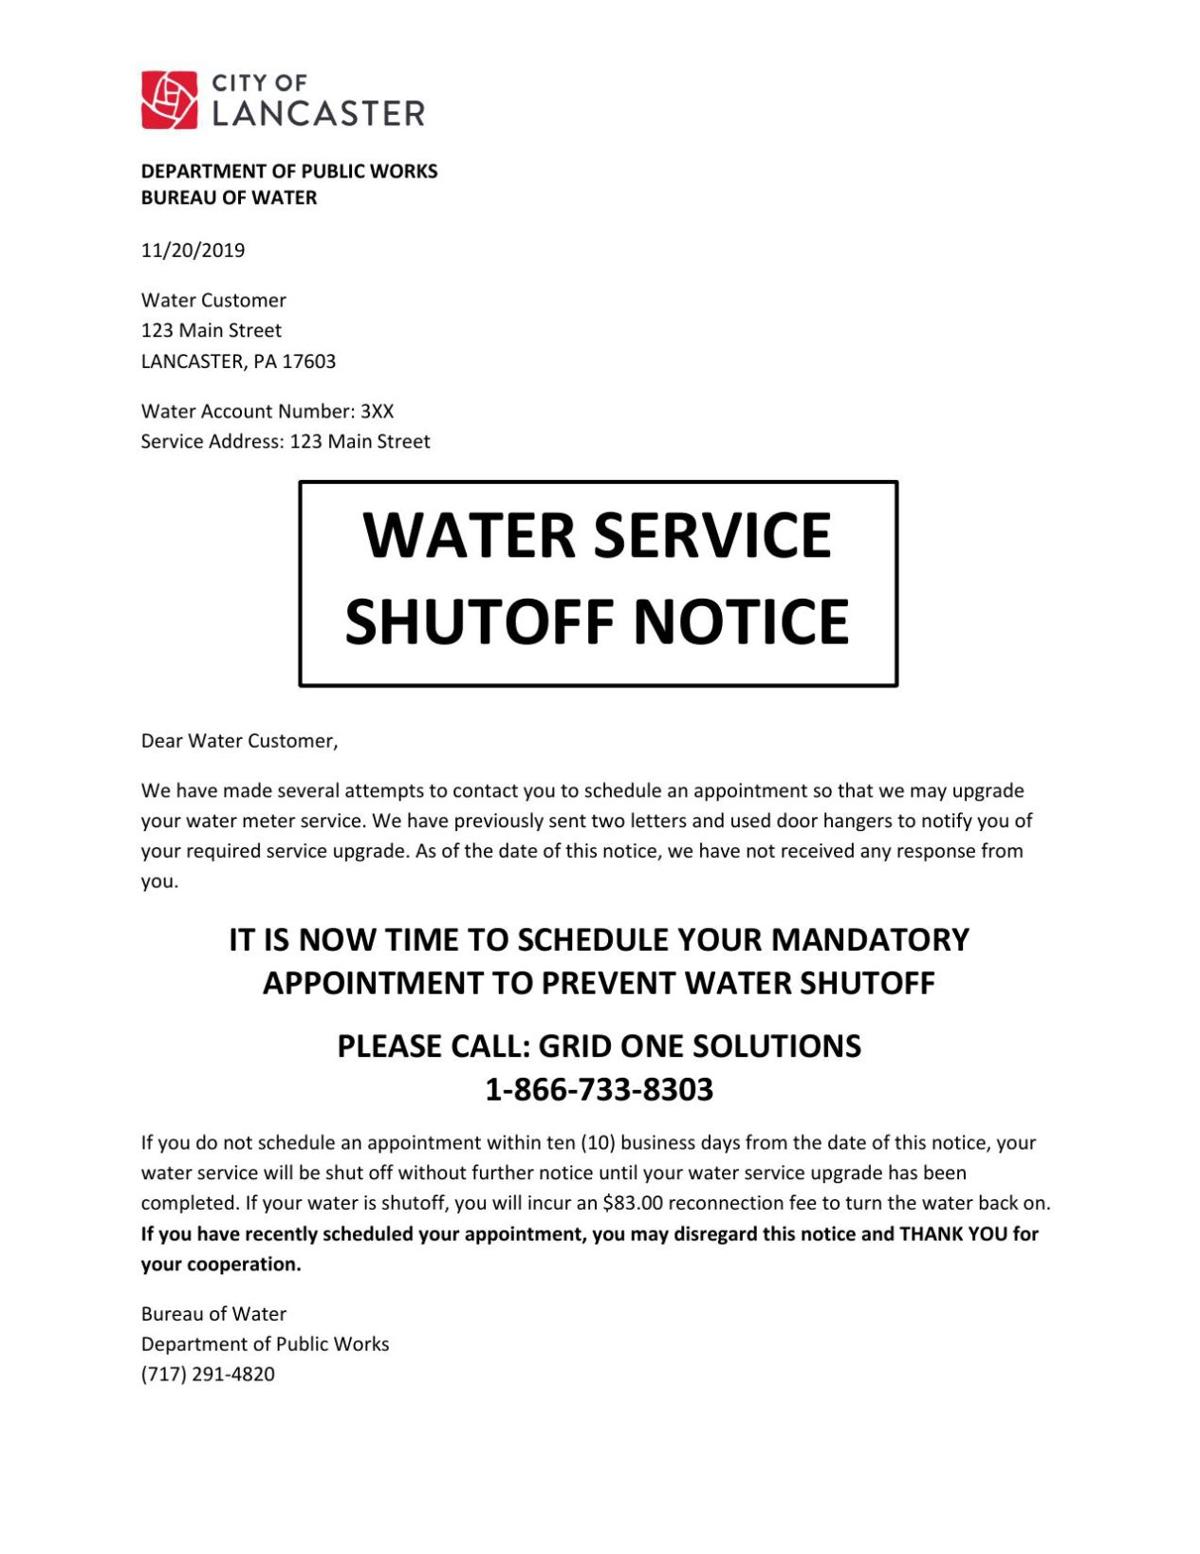 Water Service Shutoff Notice